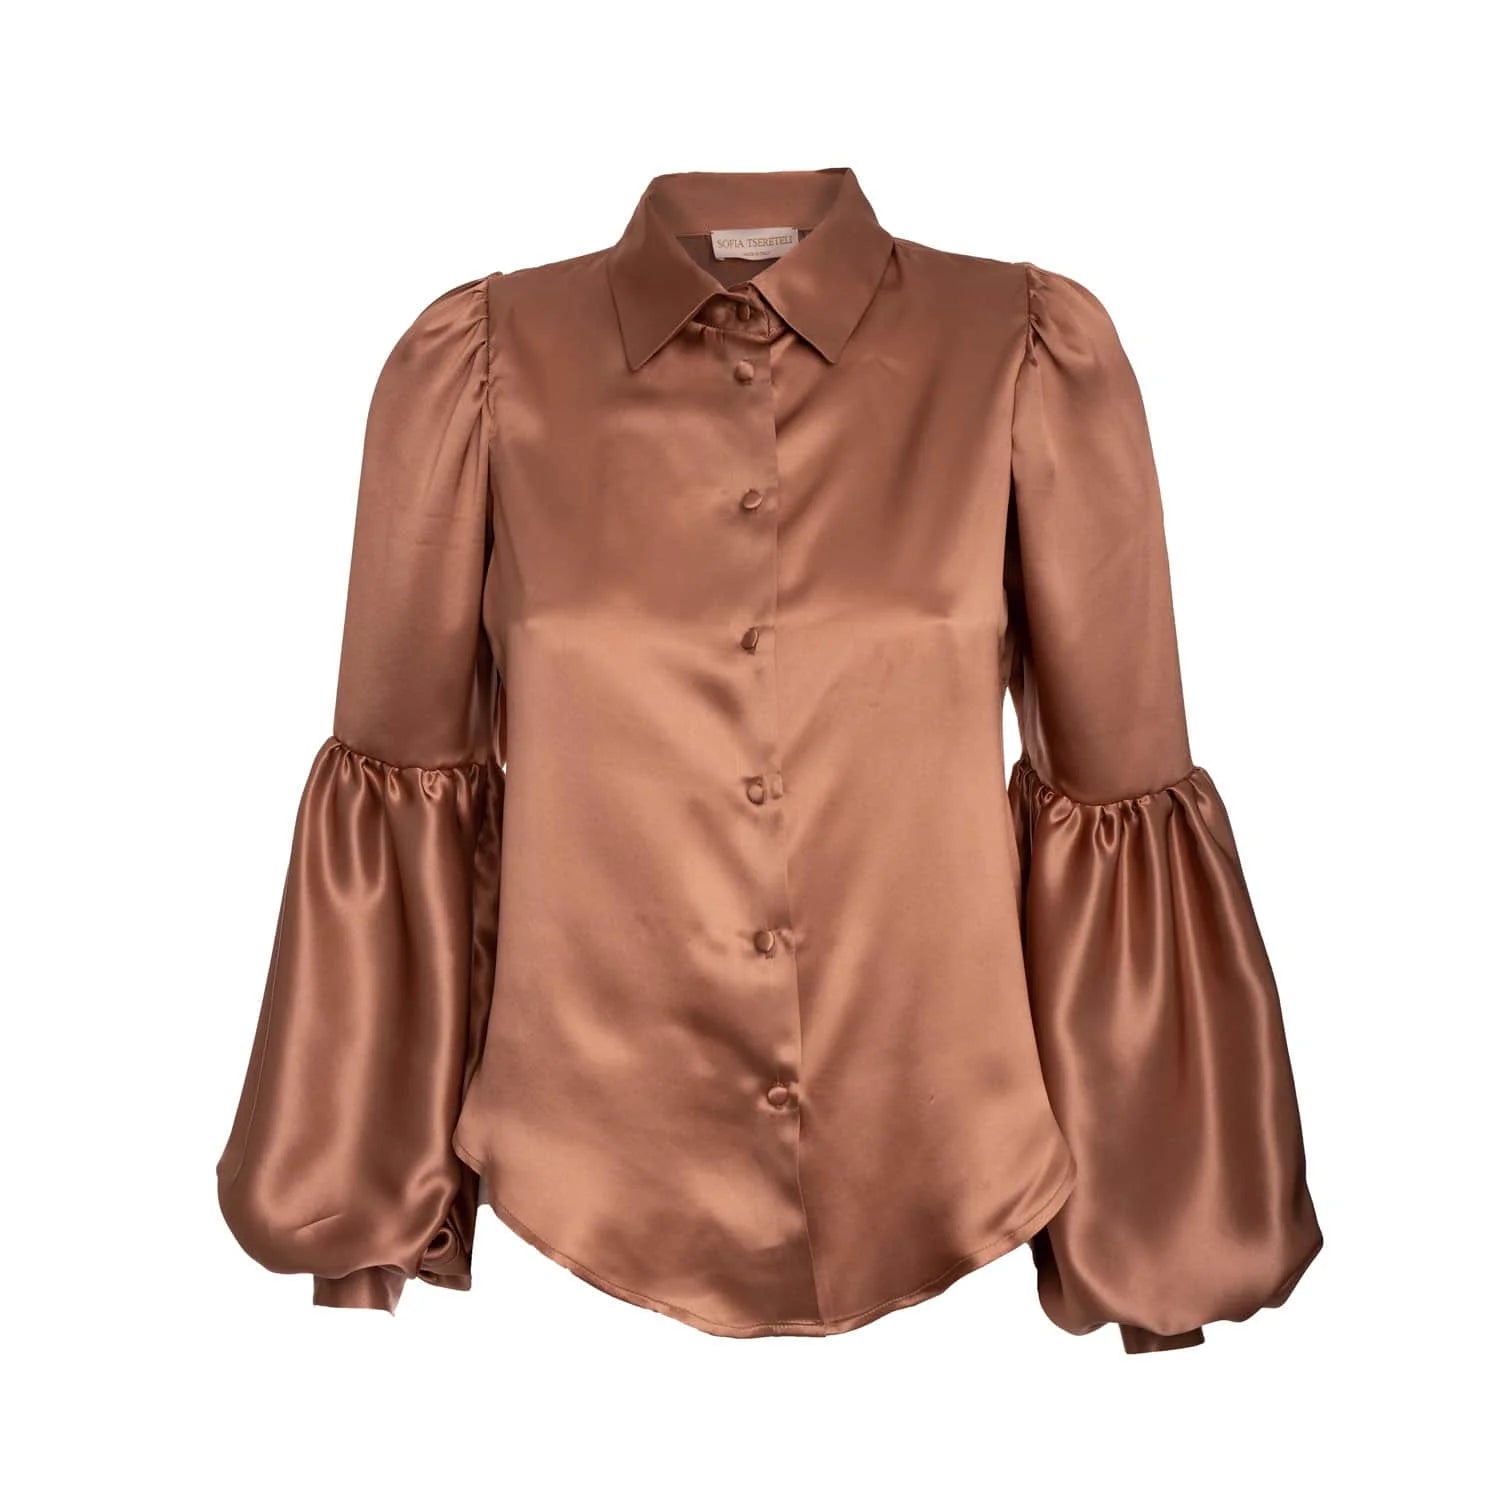 Hazelnut coloured blouse - Blouse